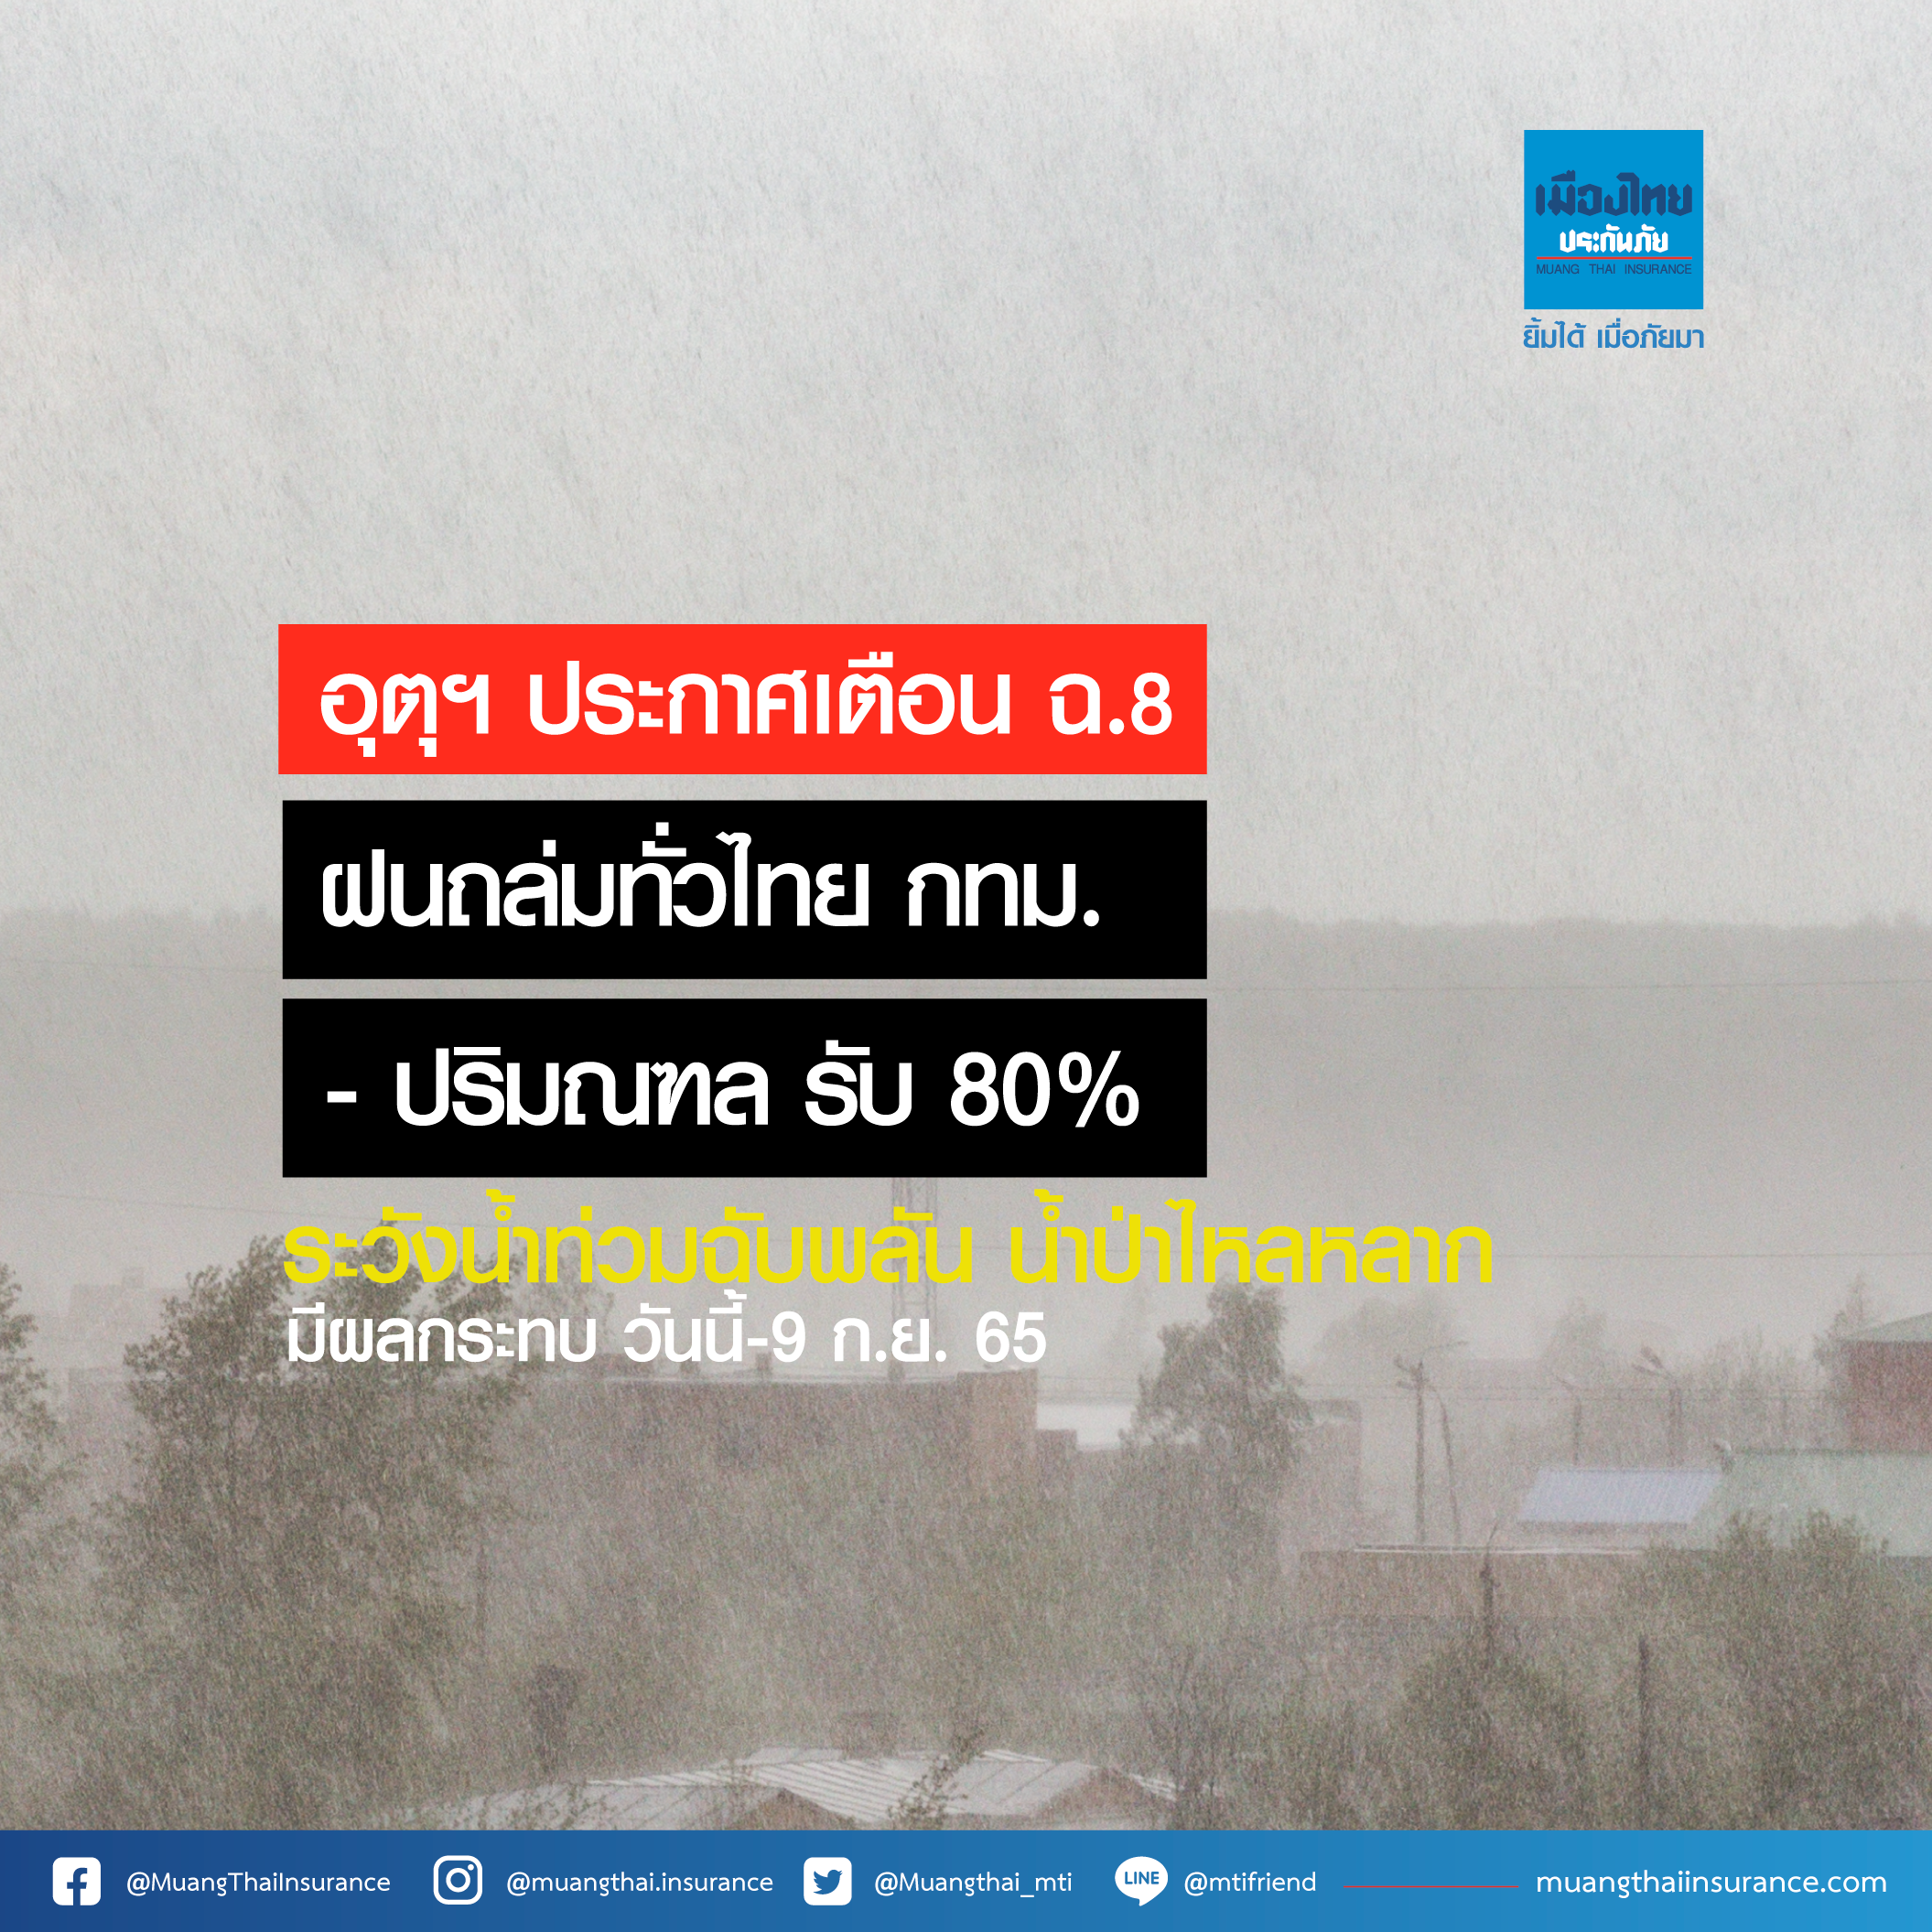 อุตุฯ ประกาศเตือน ฉ.8 ฝนถล่มทั่วไทย กทม.-ปริมณฑล รับ 80% ระวังน้ำท่วมฉับพลัน น้ำป่าไหลหลาก (วันนี้-9 ก.ย.65)